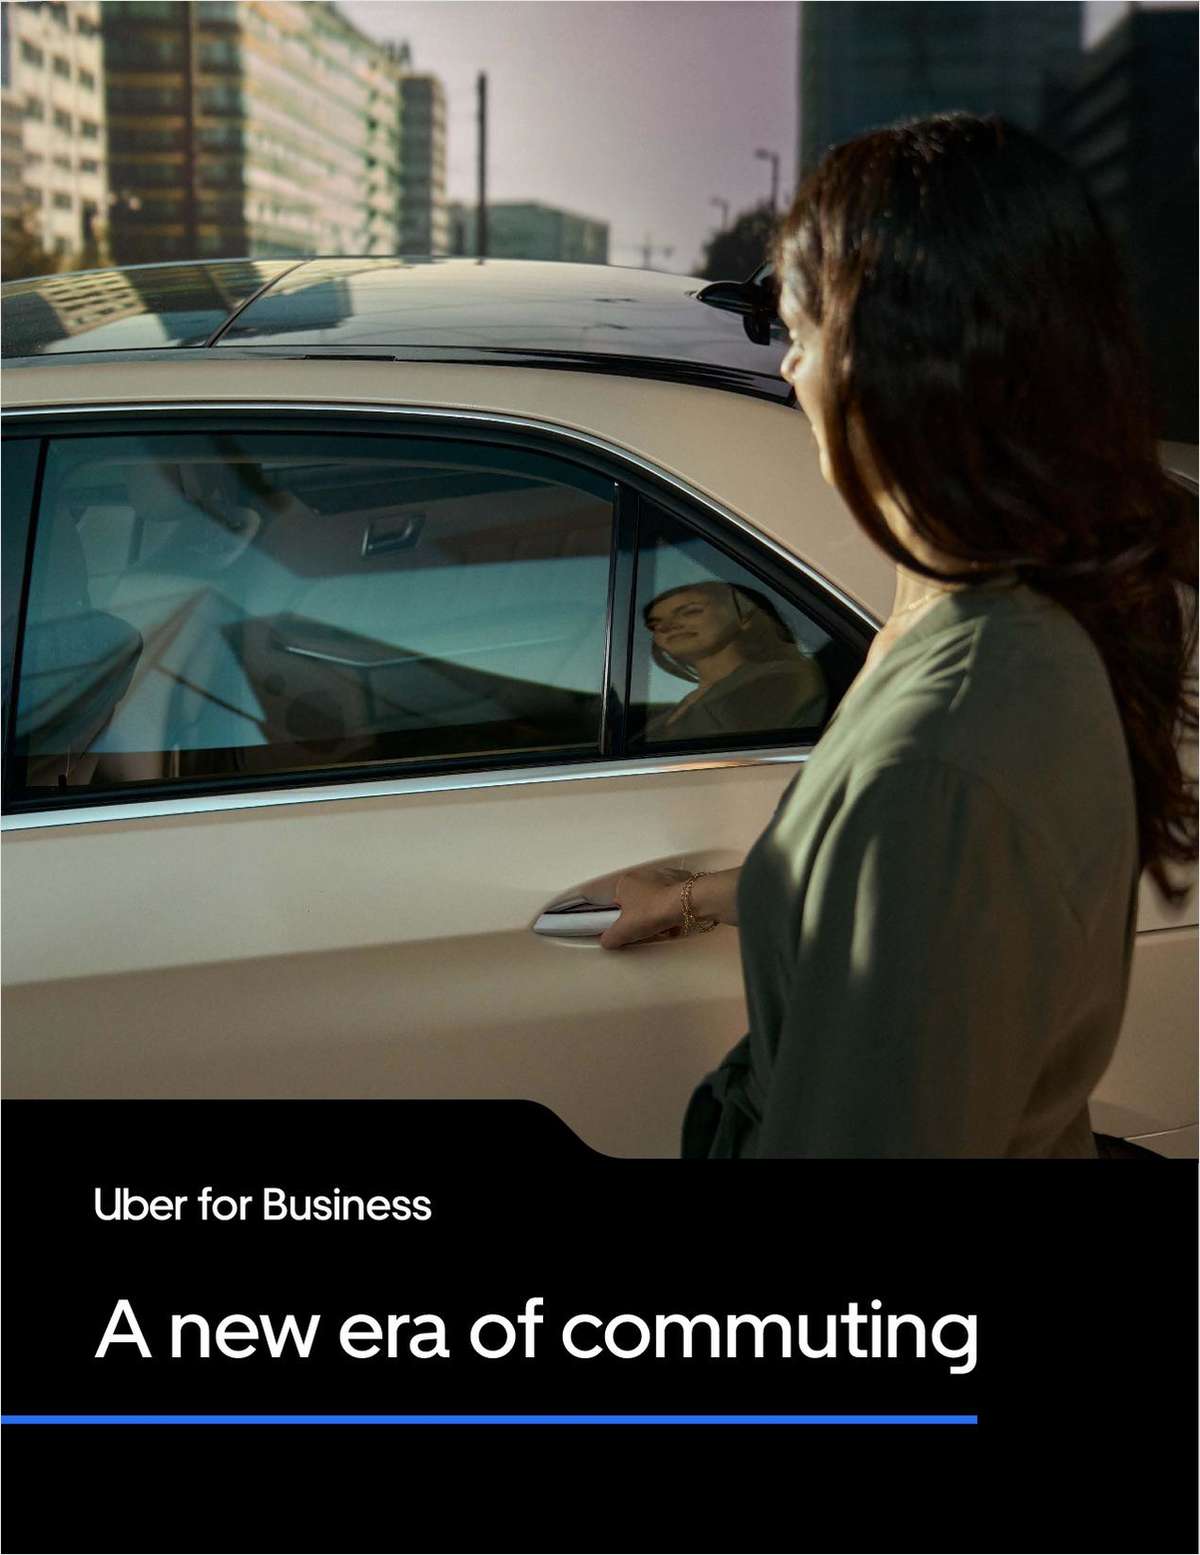 A new era of commuting